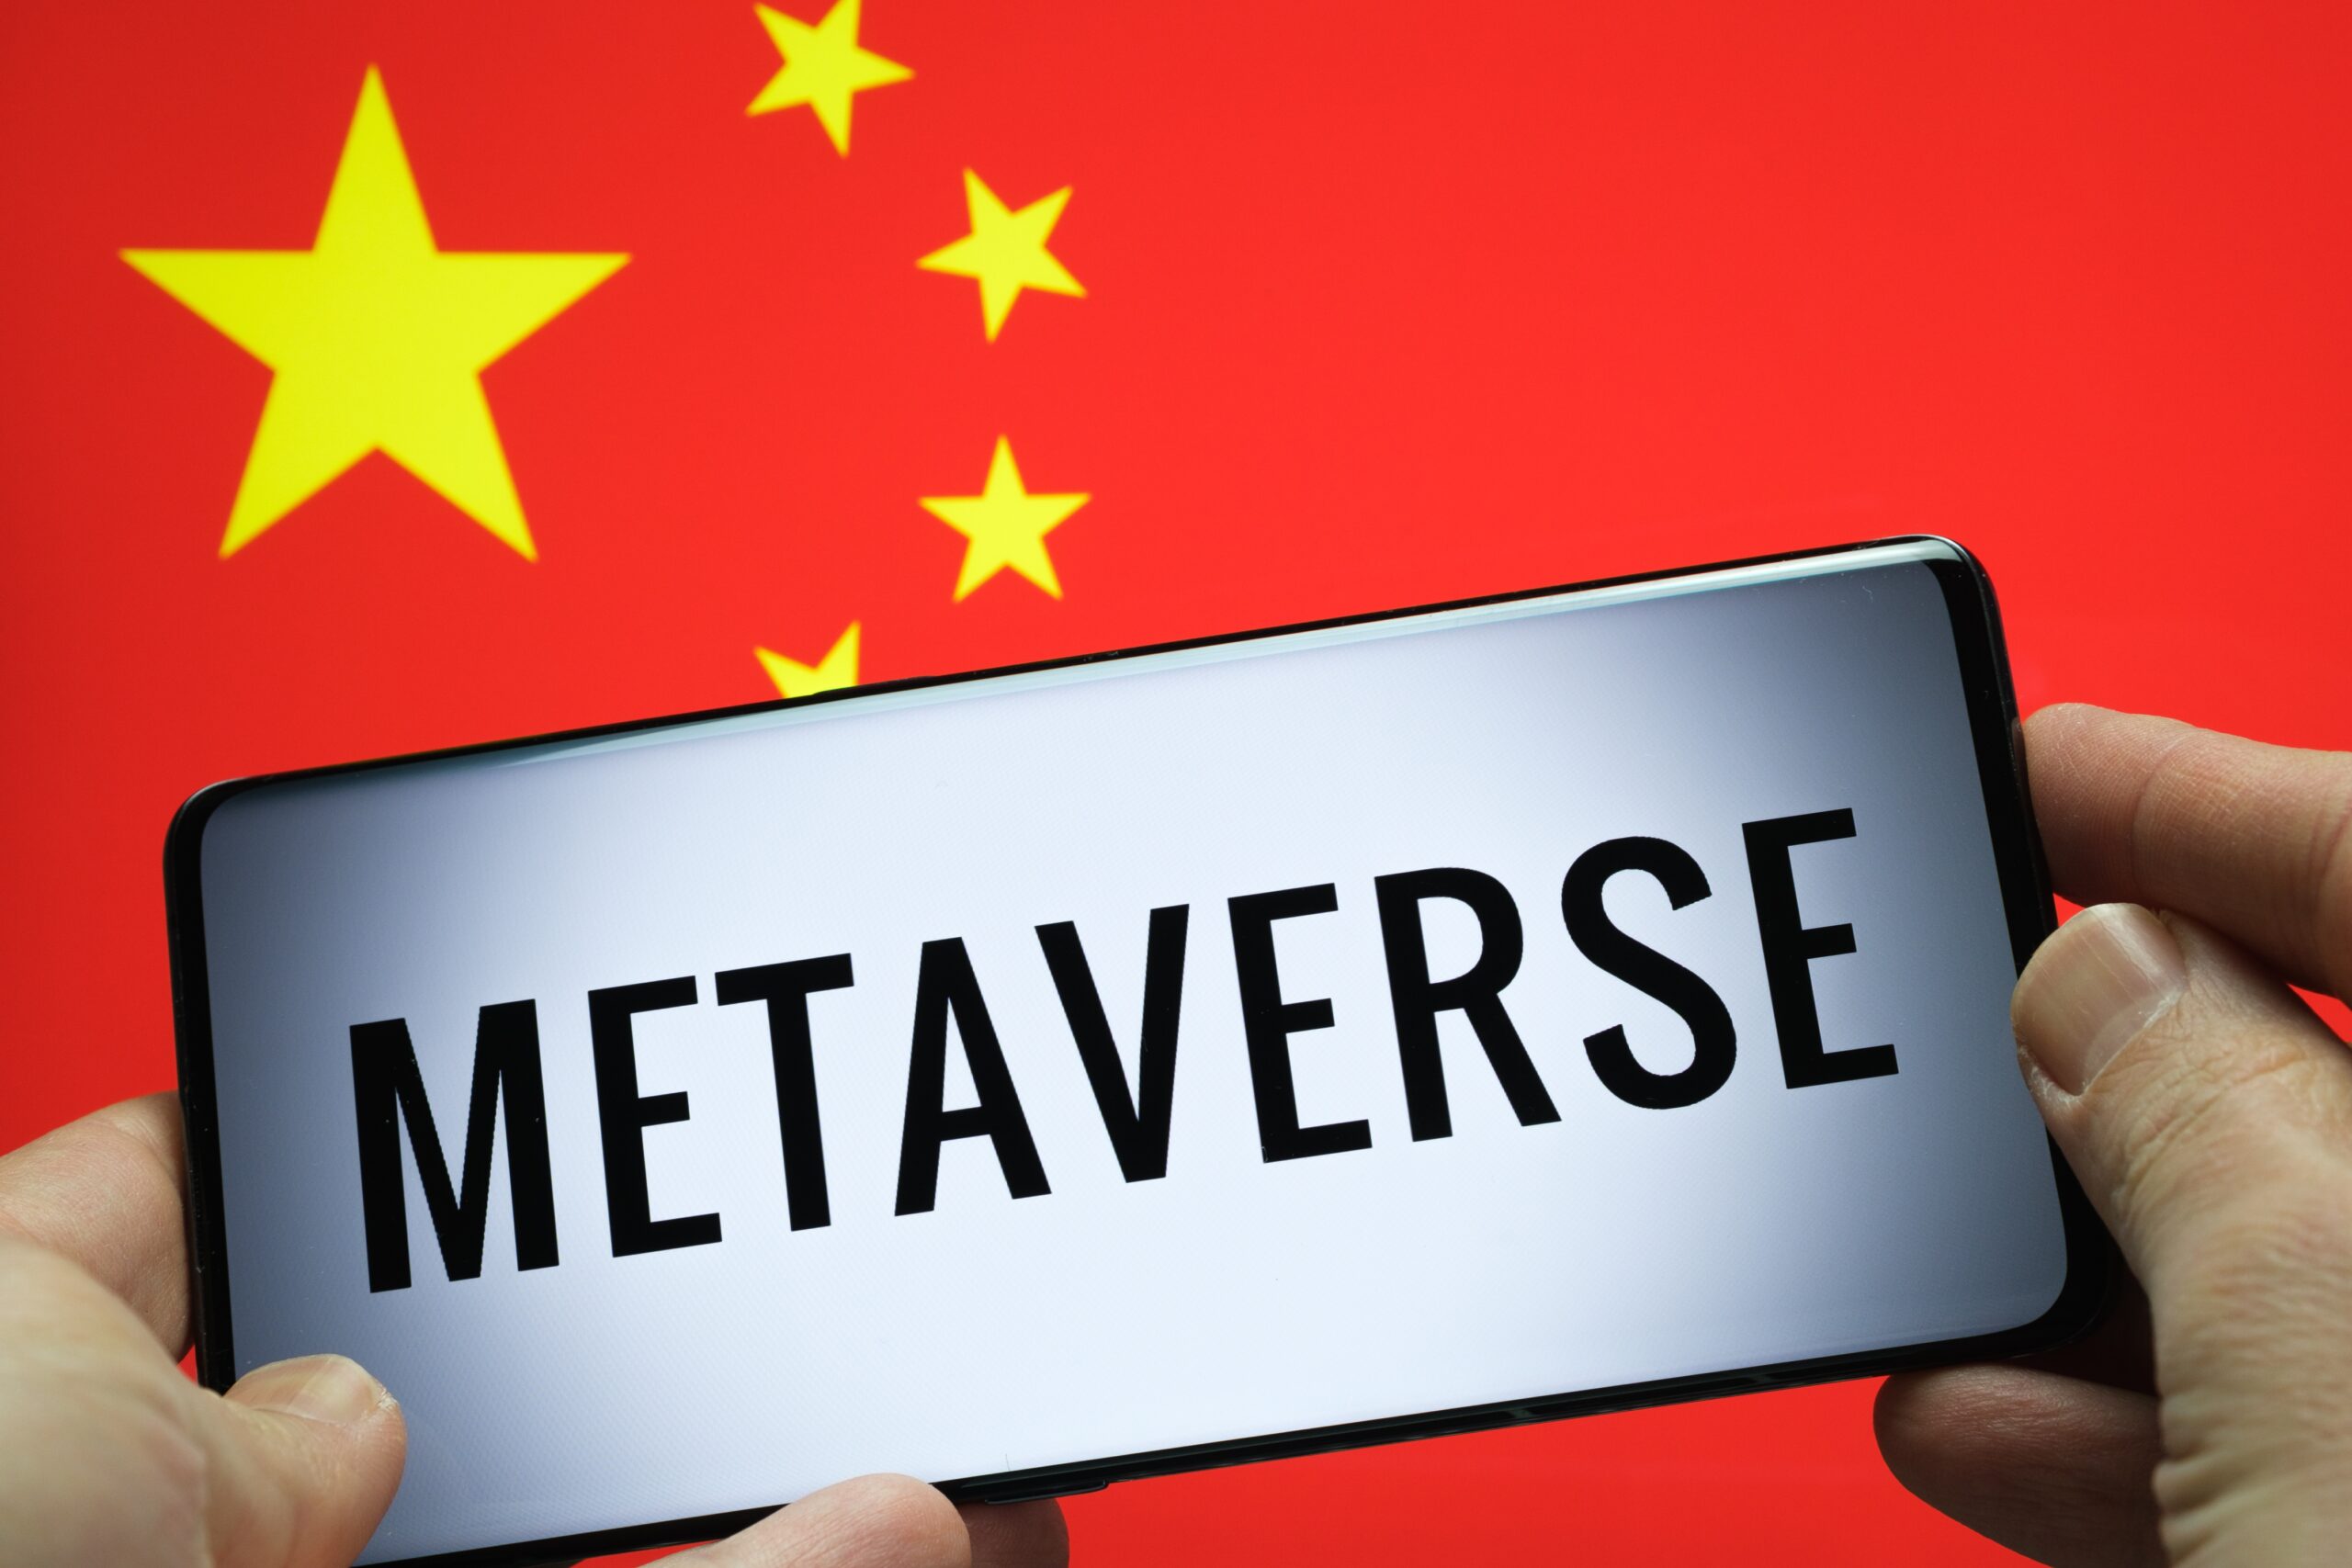 Tỉnh Sơn Đông của Trung Quốc có mức tăng trưởng Metaverse đầy tham vọng 20.5 tỷ USD